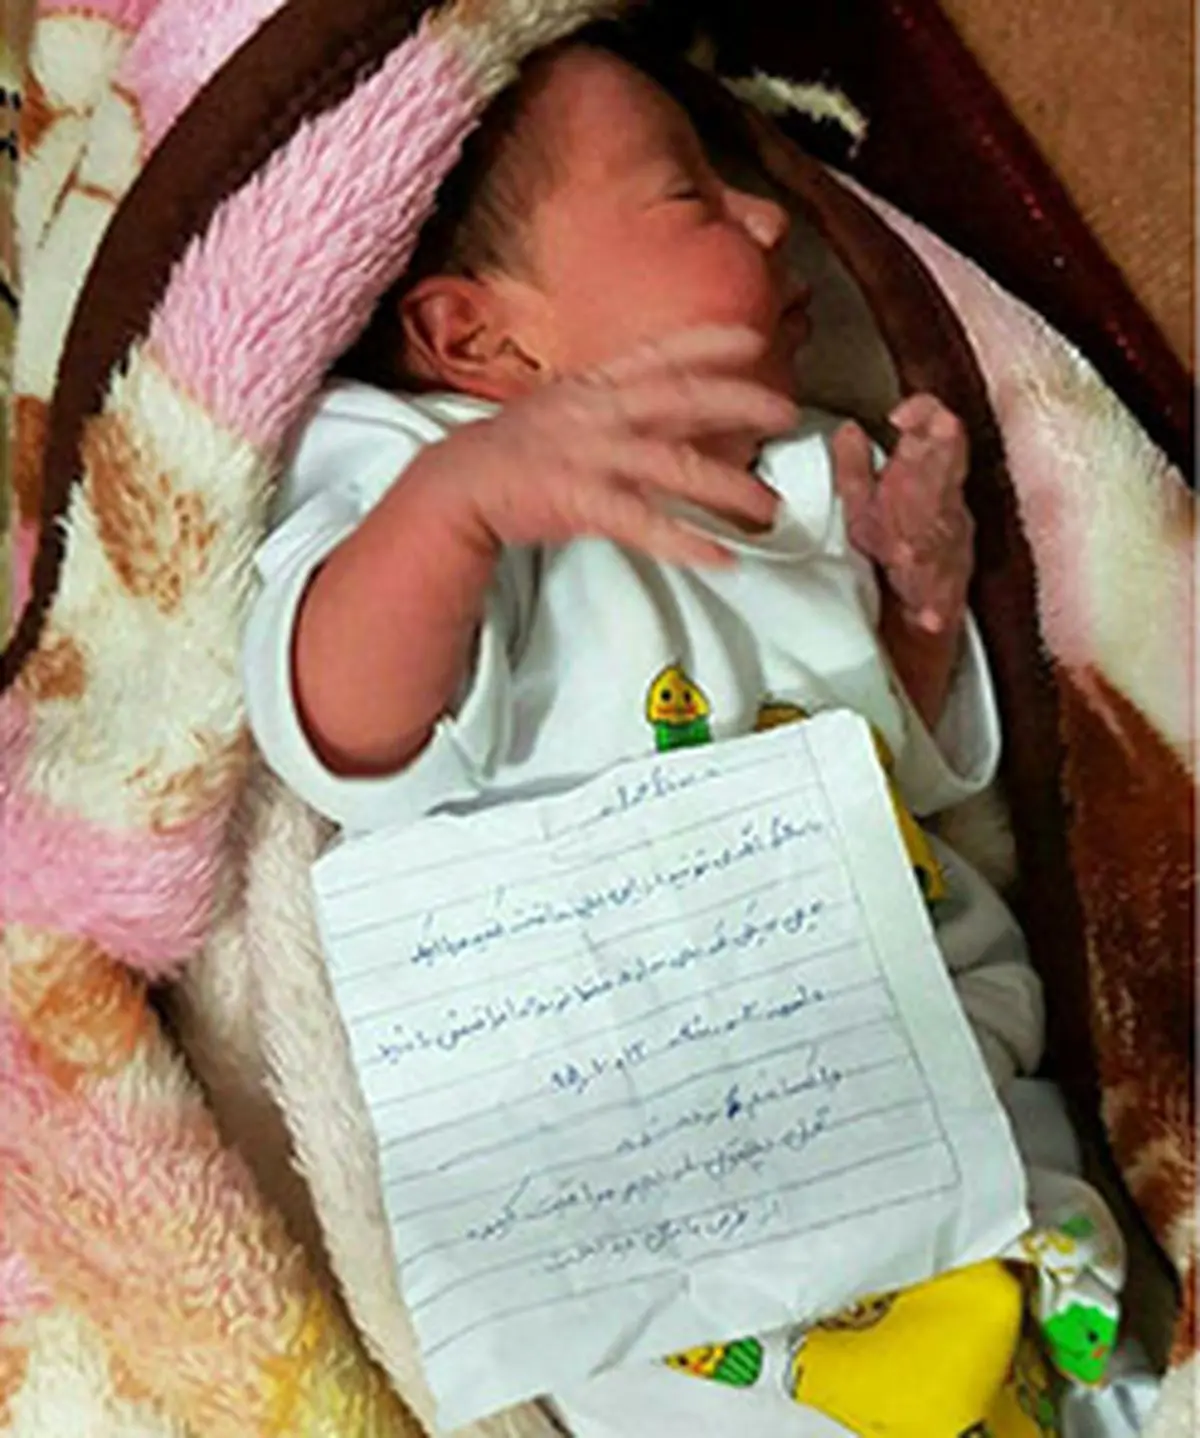 مادری با یک نوشته تلخ نوزاد 2 روزه اش سر راه اصفهانی ها گذاشت+عکس نوزاد